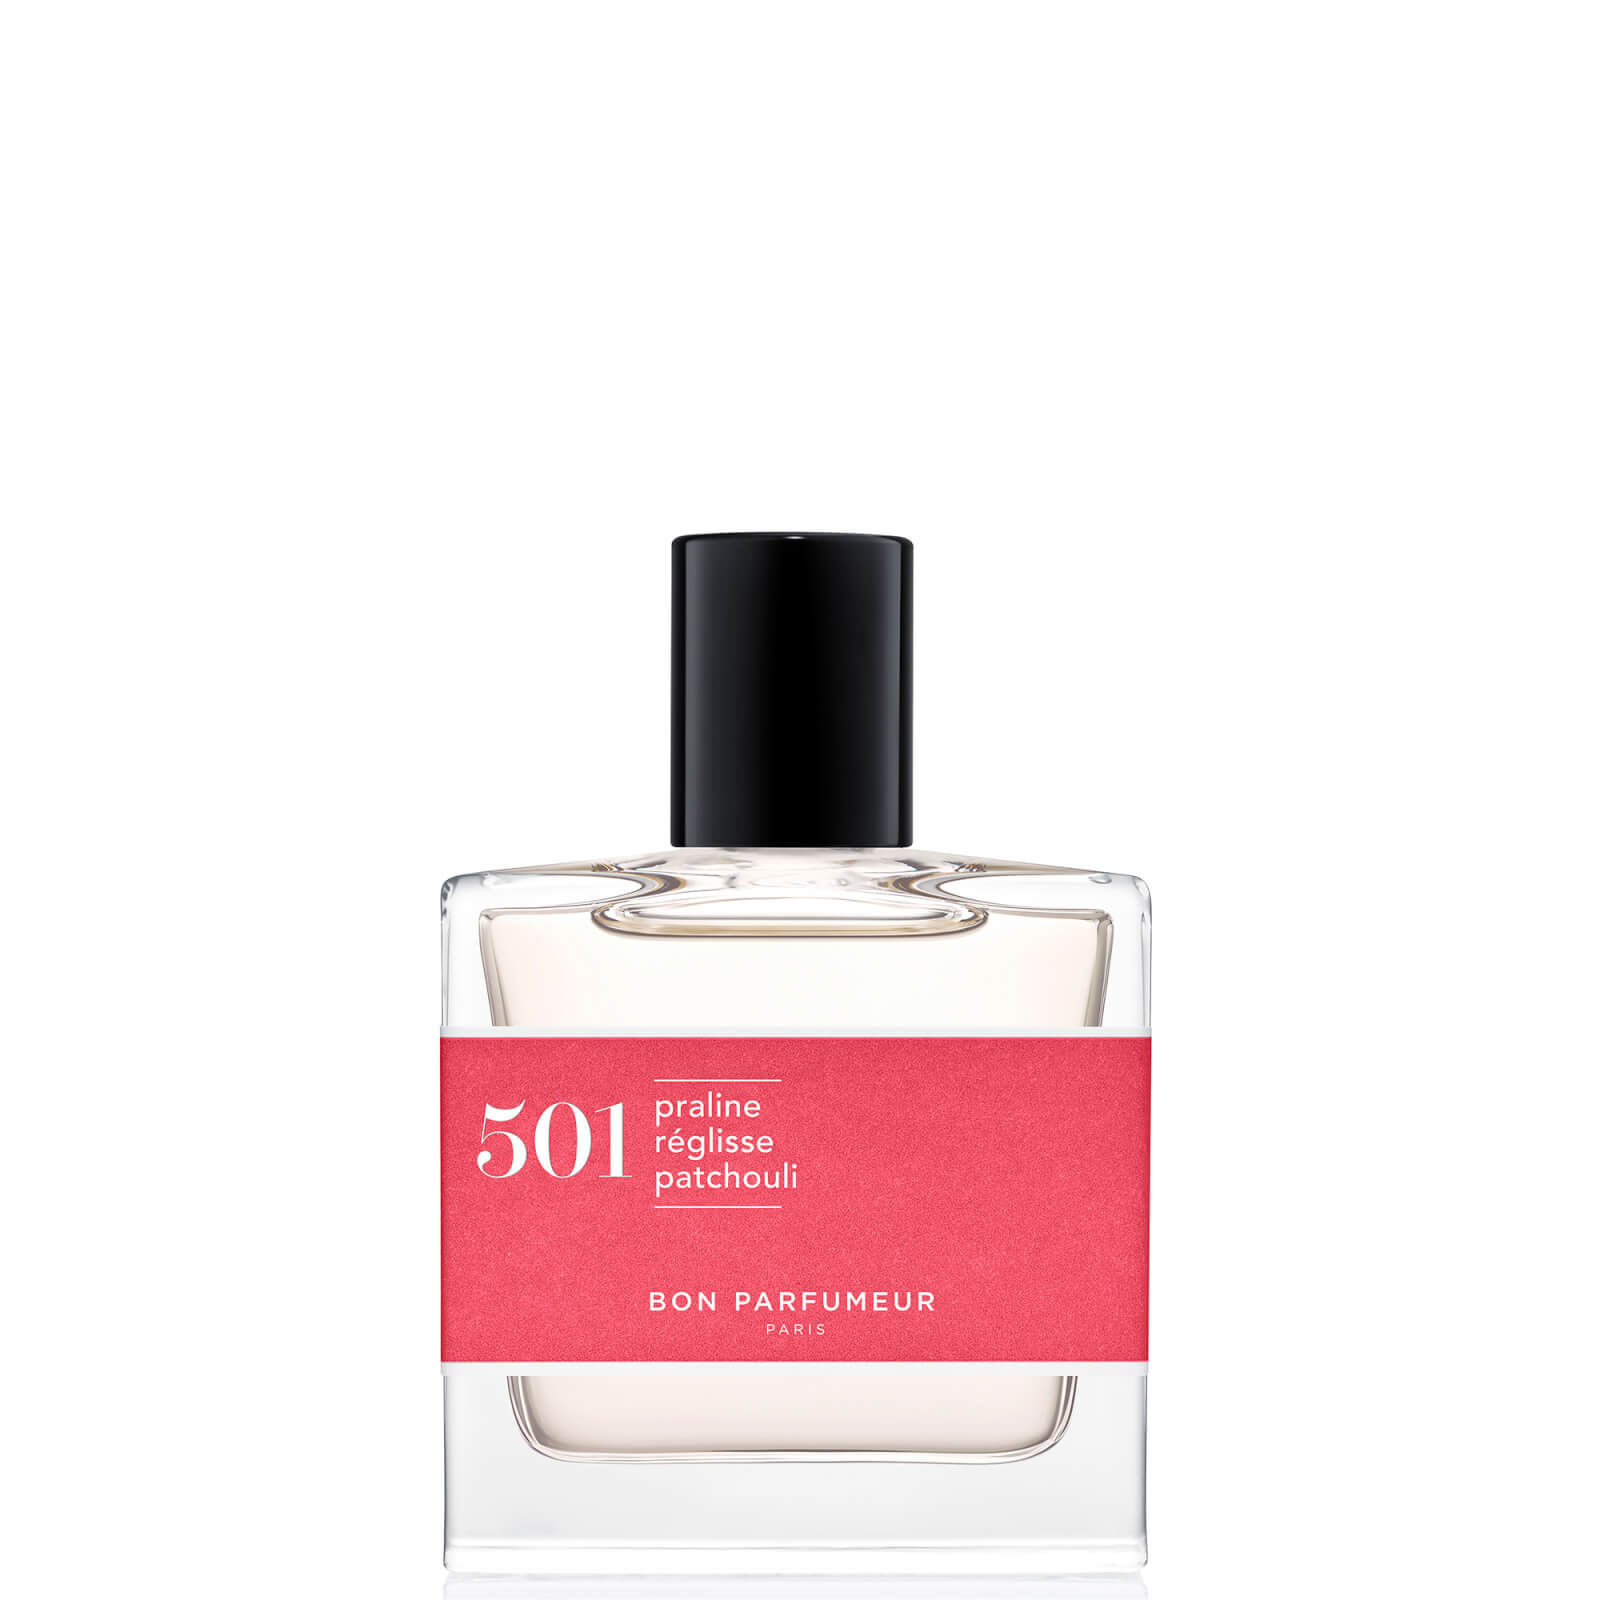 Image of Bon Parfumeur 501 Praline Licorice Patchouli Eau de Parfum - 30ml